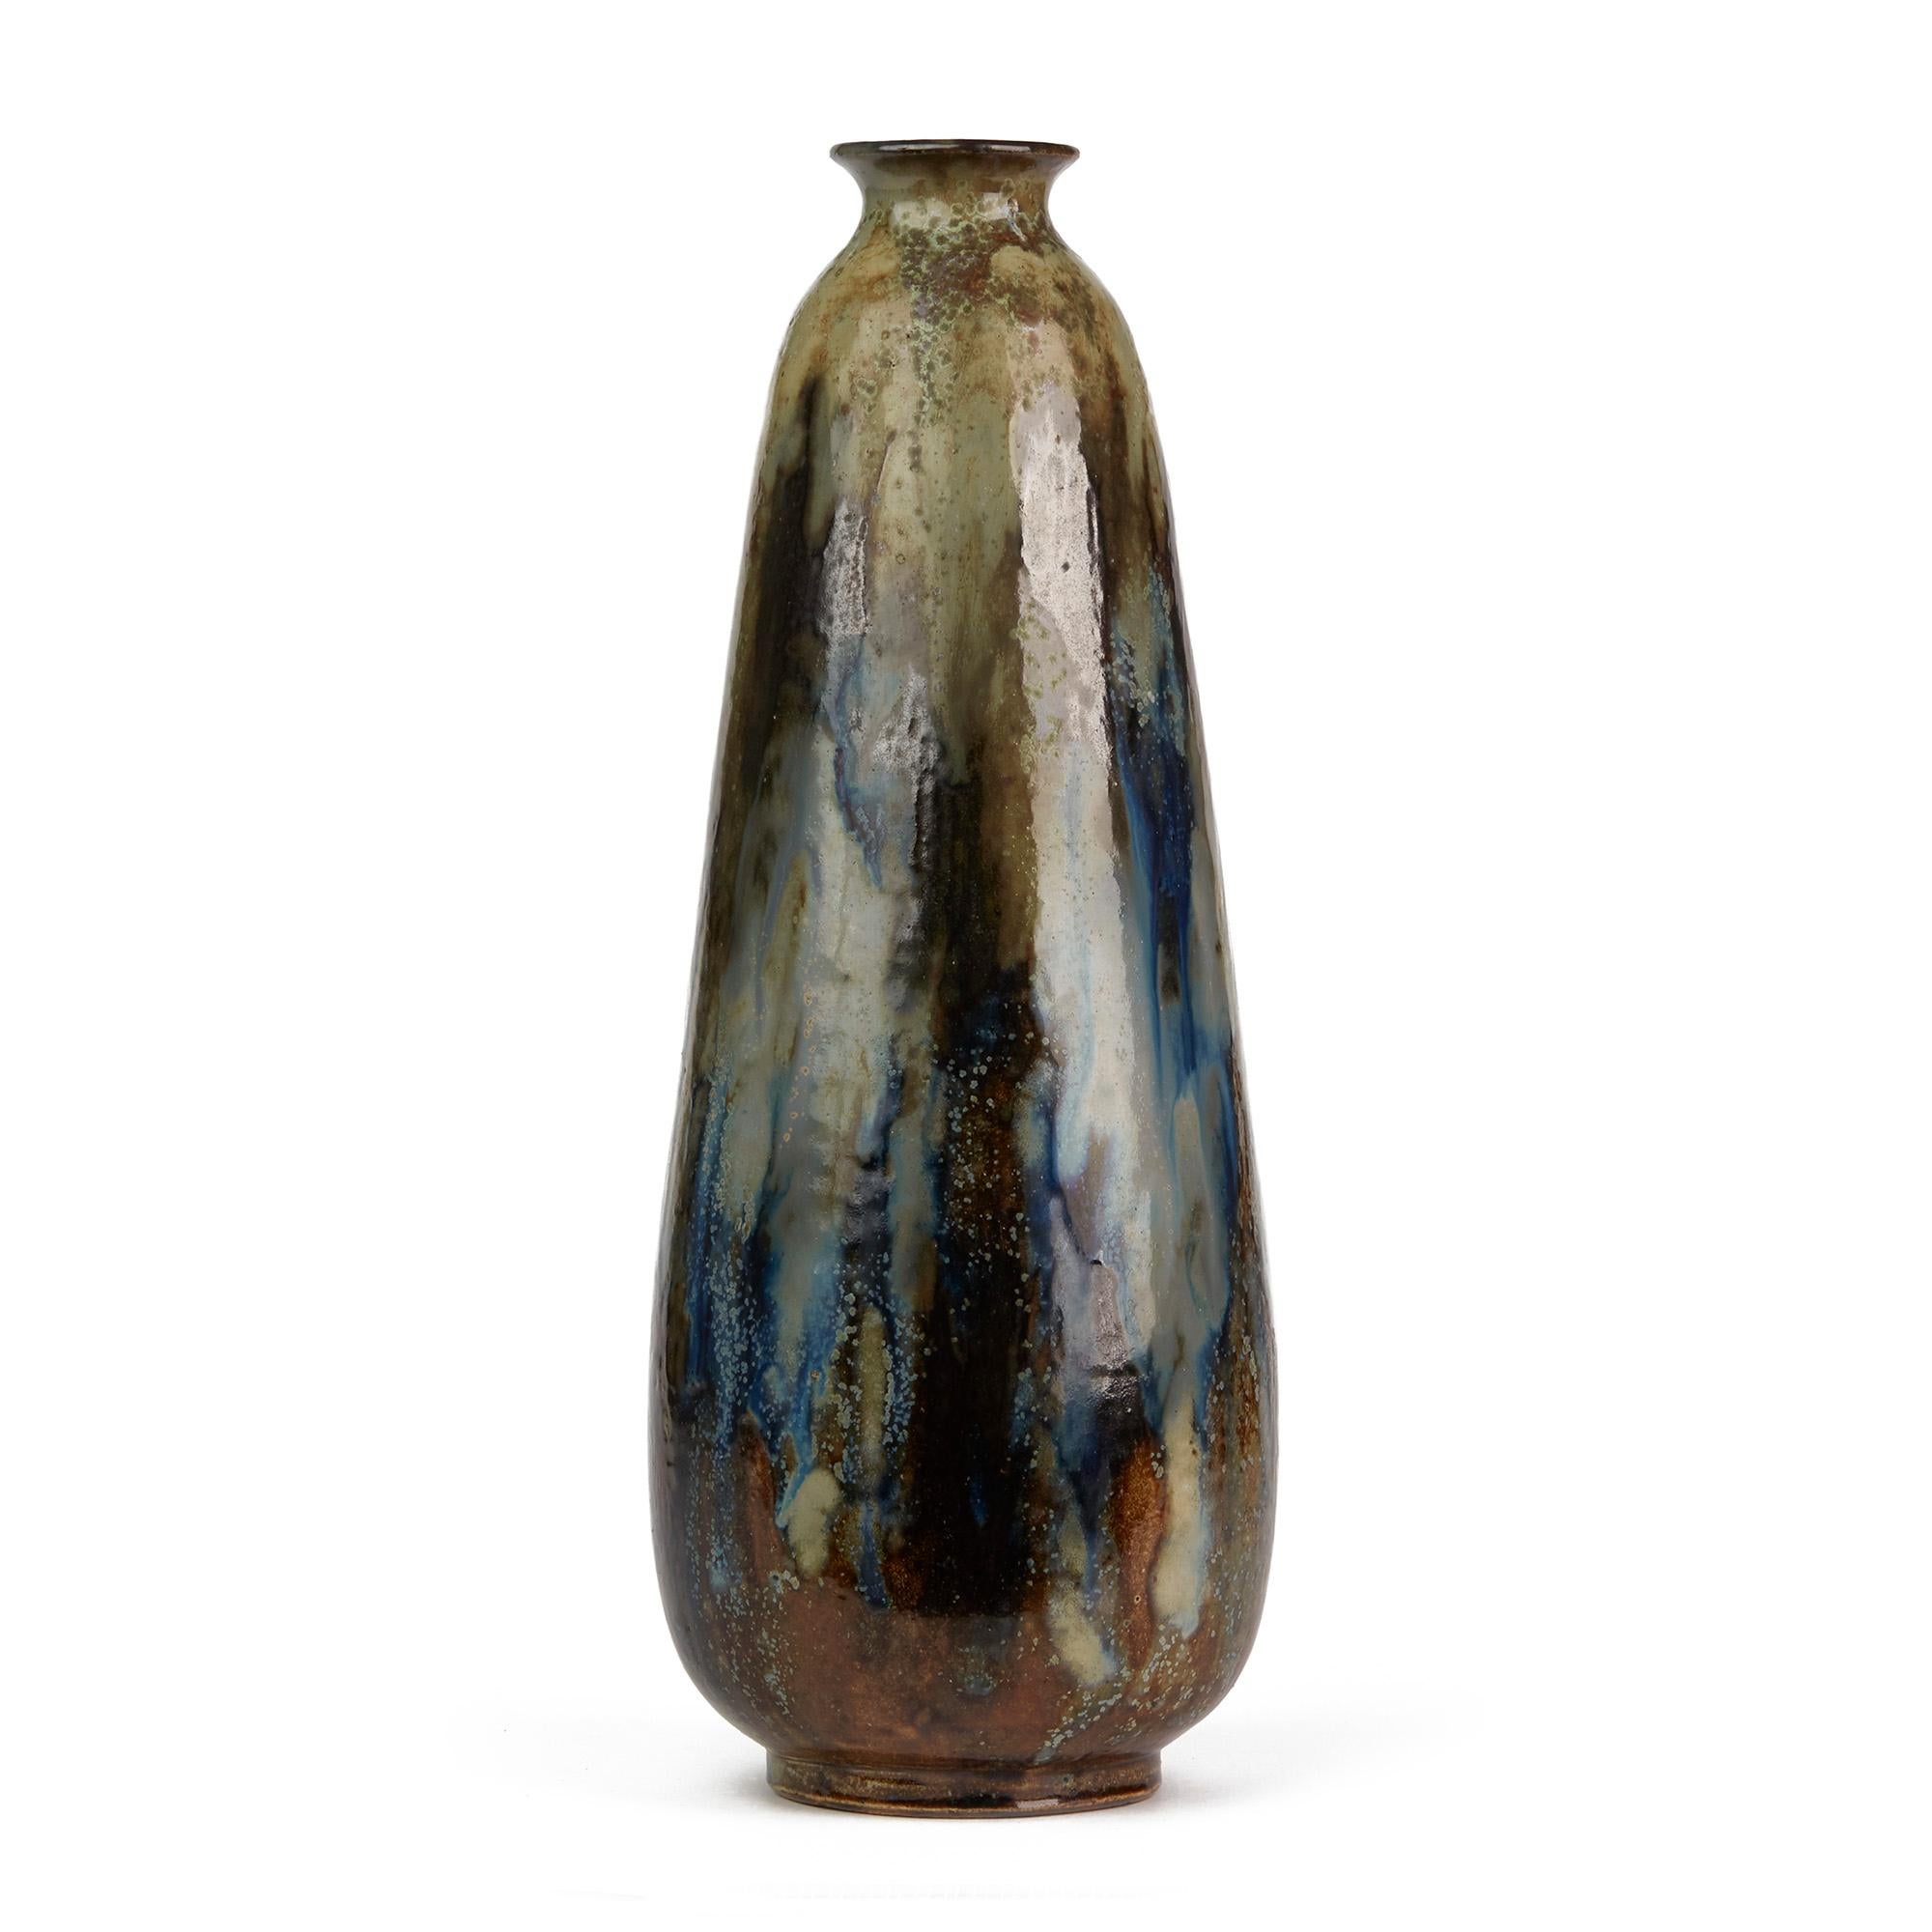 Un étonnant vase en grès de poterie d'art belge exceptionnellement émaillé par Roger Guérin et datant d'environ 1930. Ce grand vase en forme de bouteille repose sur une base étroite et arrondie et est décoré de glaçures colorées striées dans des